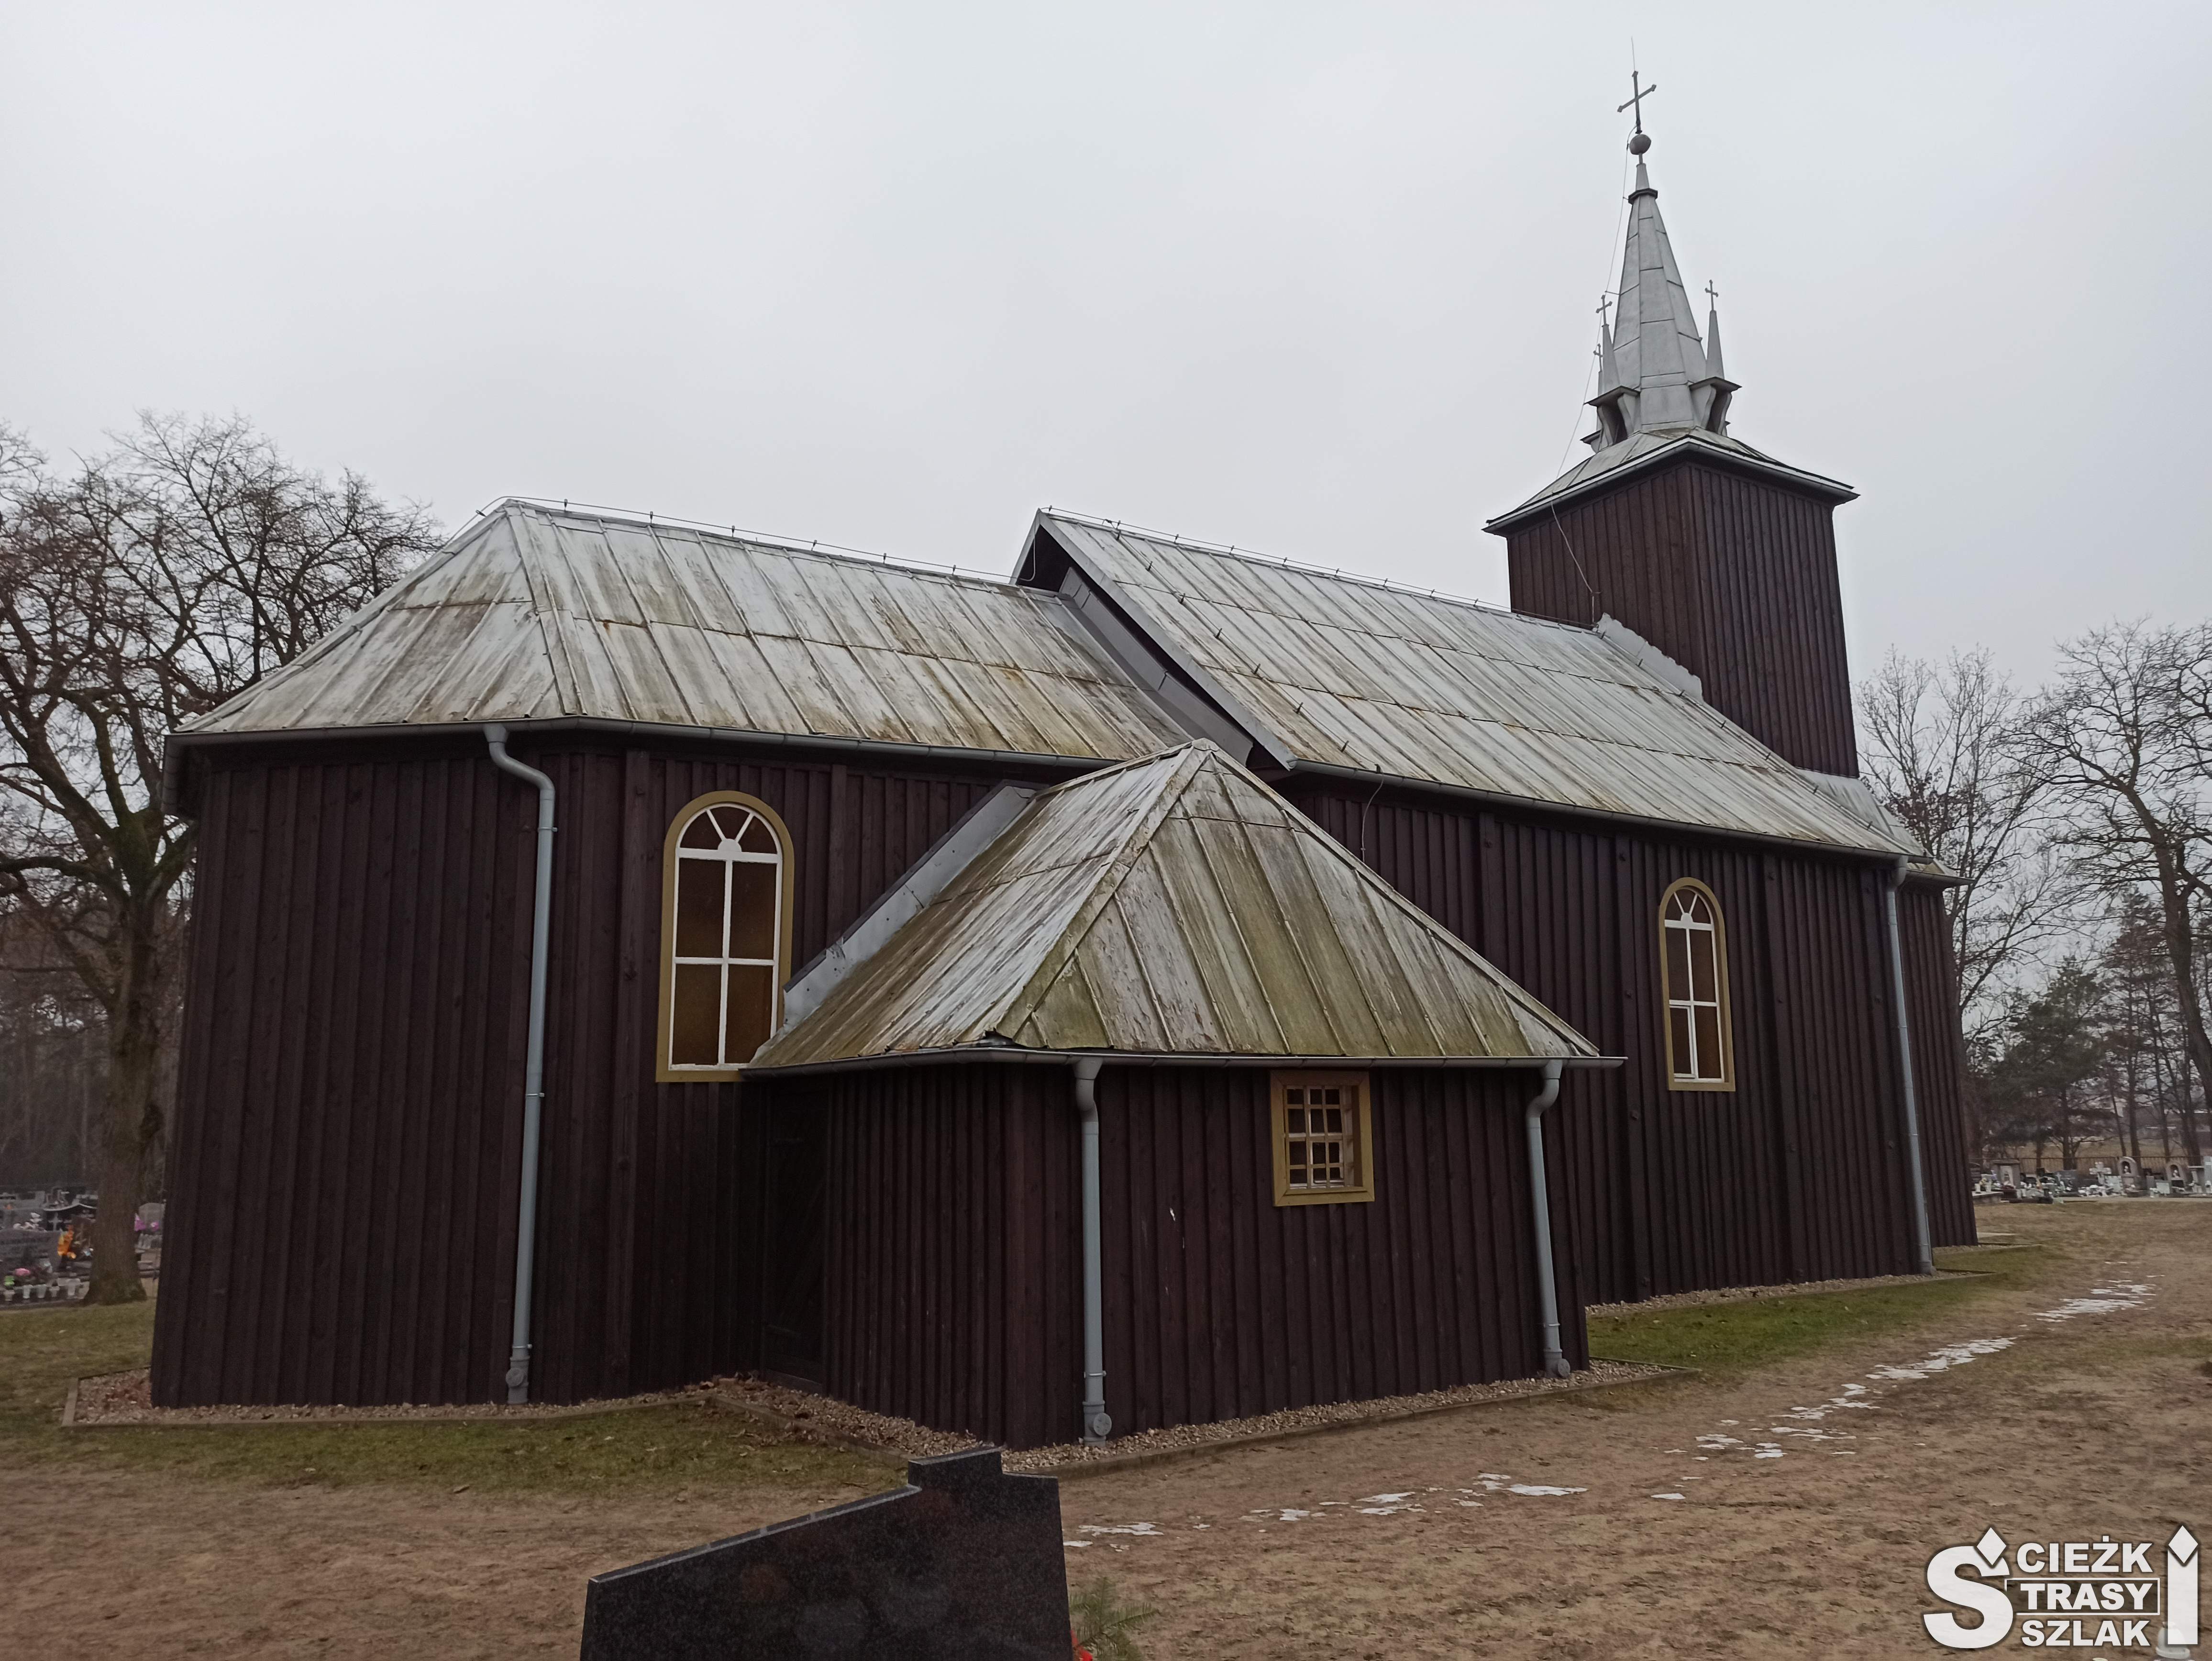 Drewniany kościół w Kębłowie z blaszanym dachem, i wieżą kościelną w brązowym kolorze